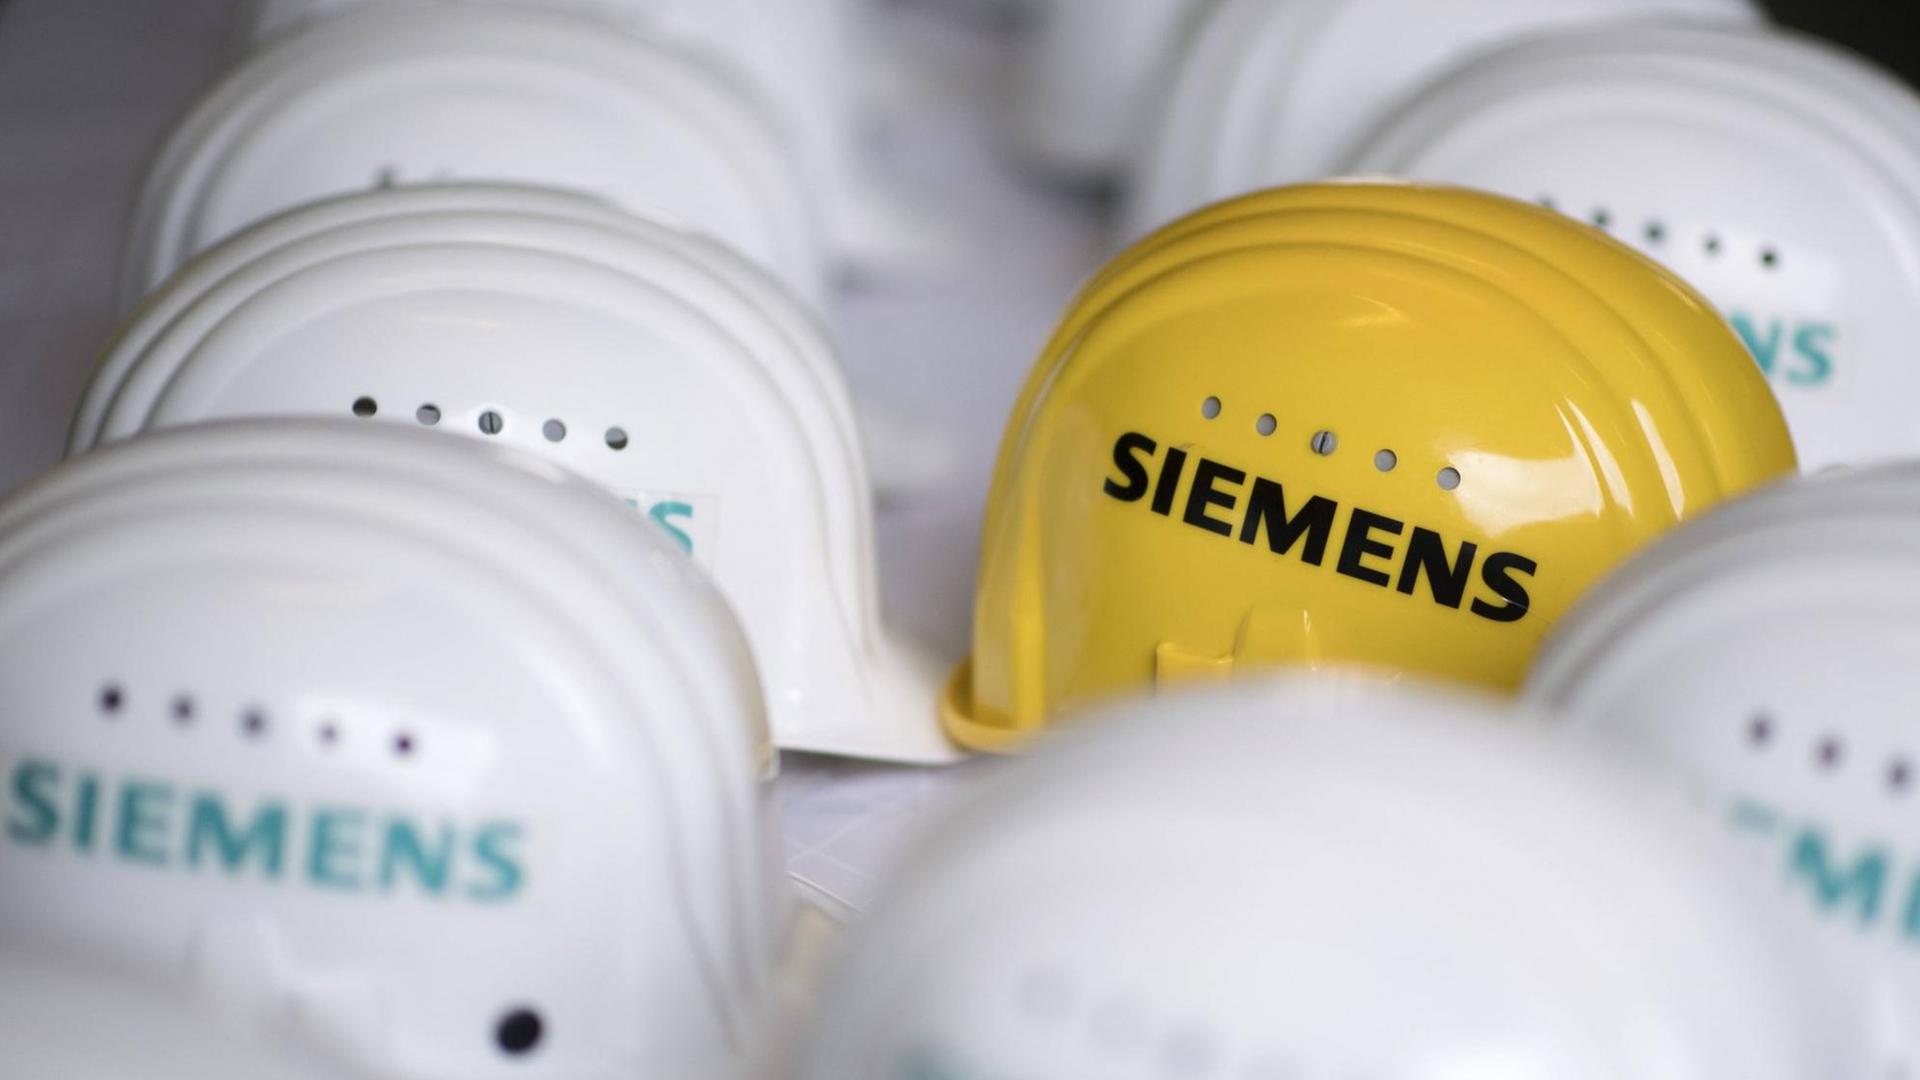 Logo der Siemens AG auf einem gelben Schutzhelm im Siemens-Gasturbinenwerk bei der Siemens AG in der Turbinenhalle in Berlin.